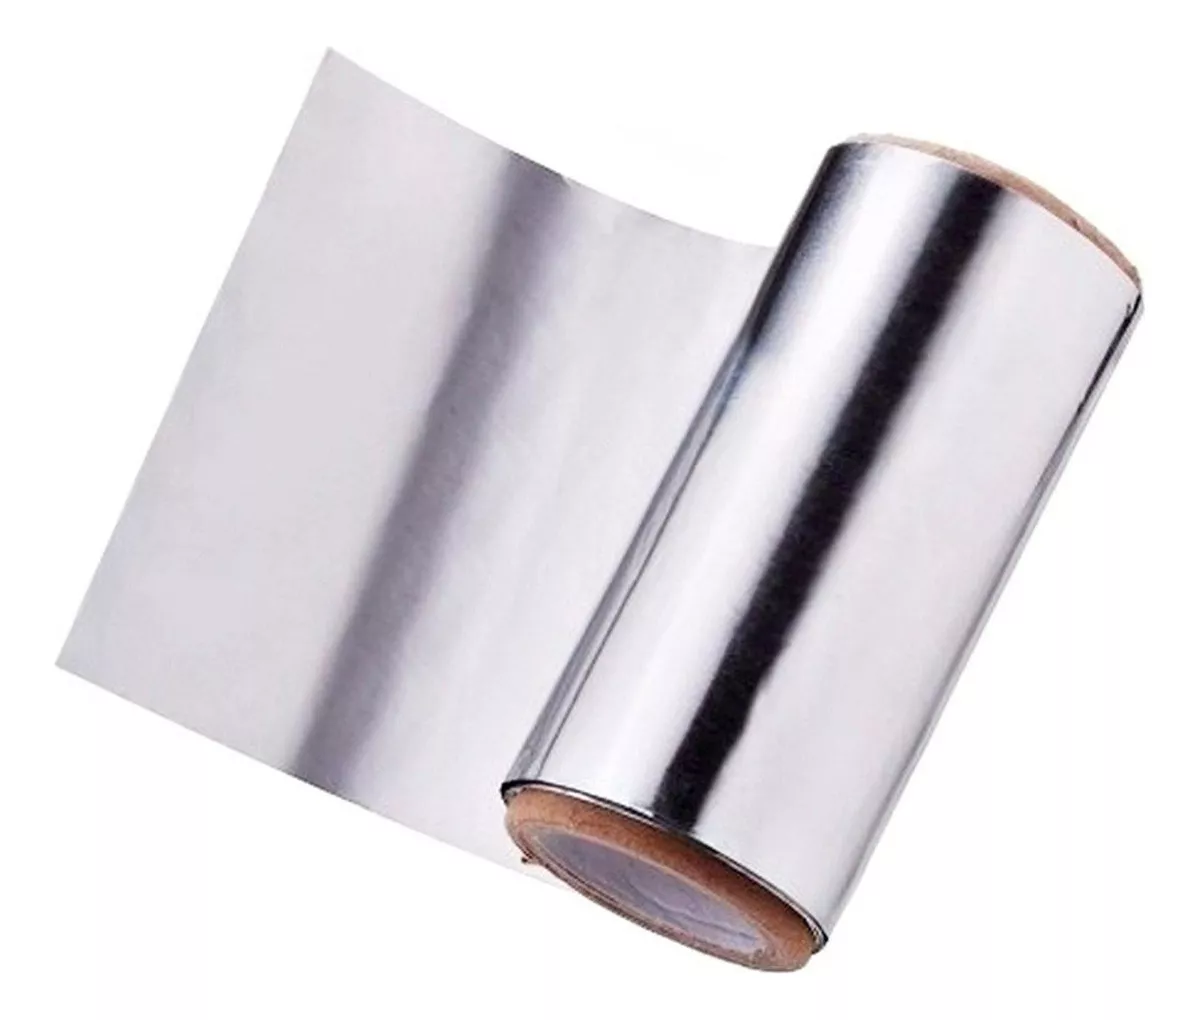 Primera imagen para búsqueda de papel aluminio cocina